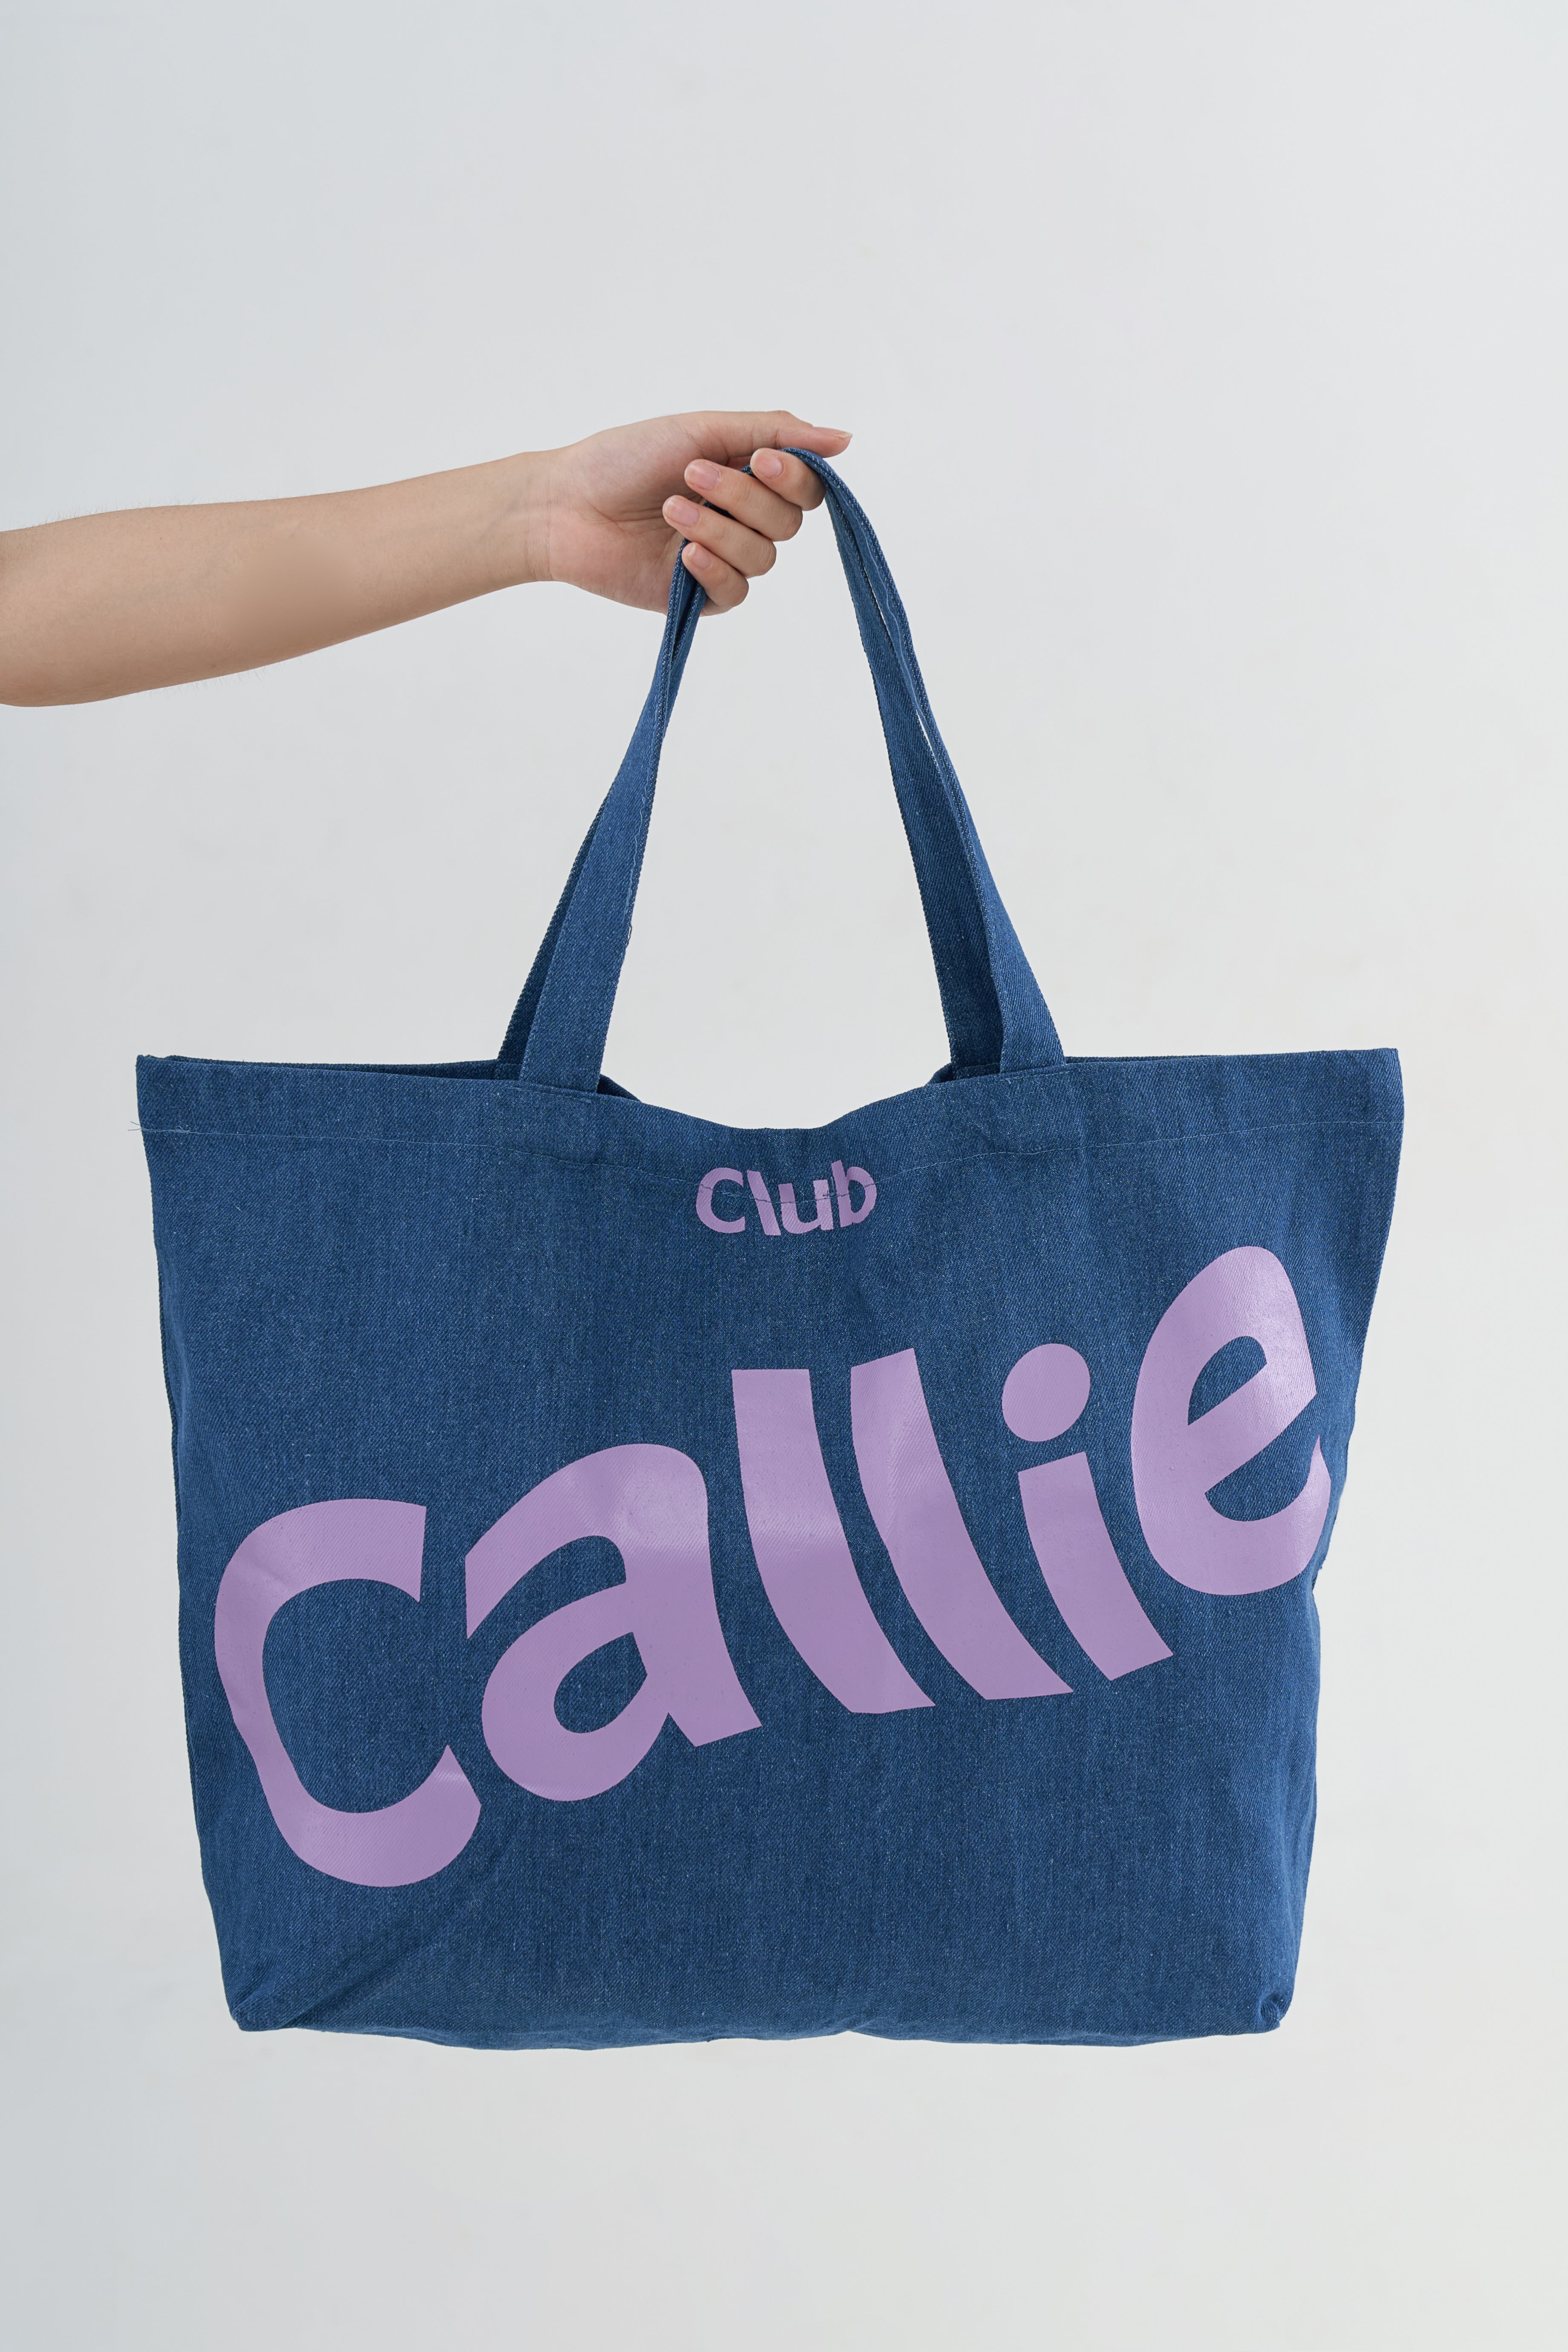 CALLIE CLUB